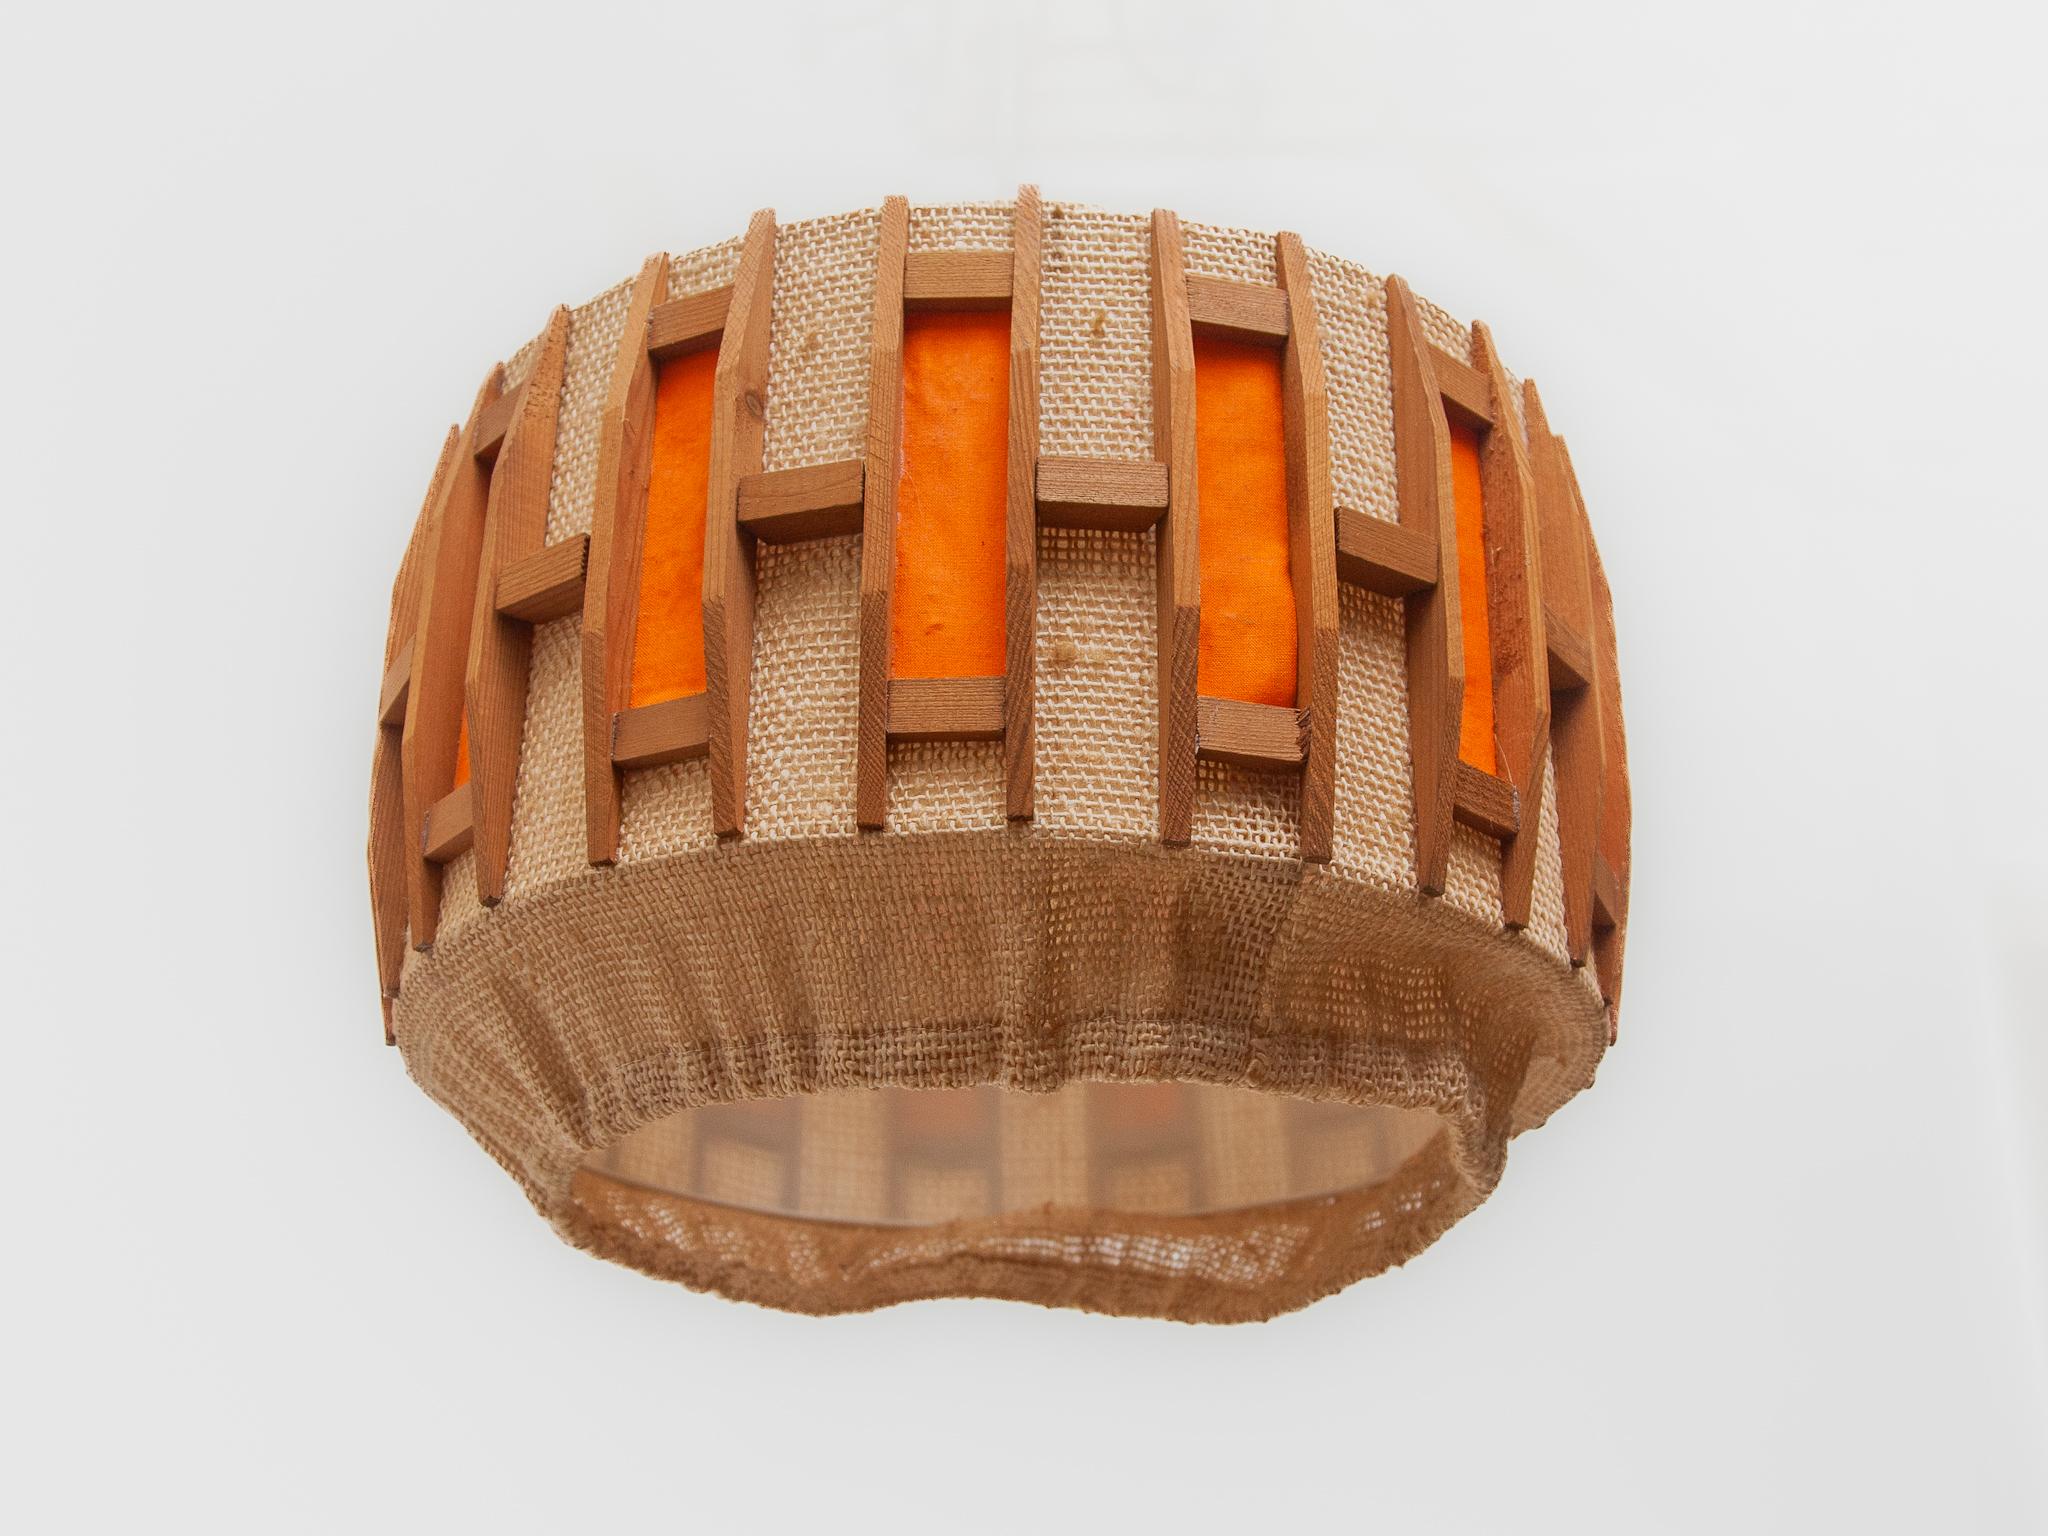 Orange Midcentury Belgium Design in Teak and Jute Pendant Lamp, 1960s For Sale 2